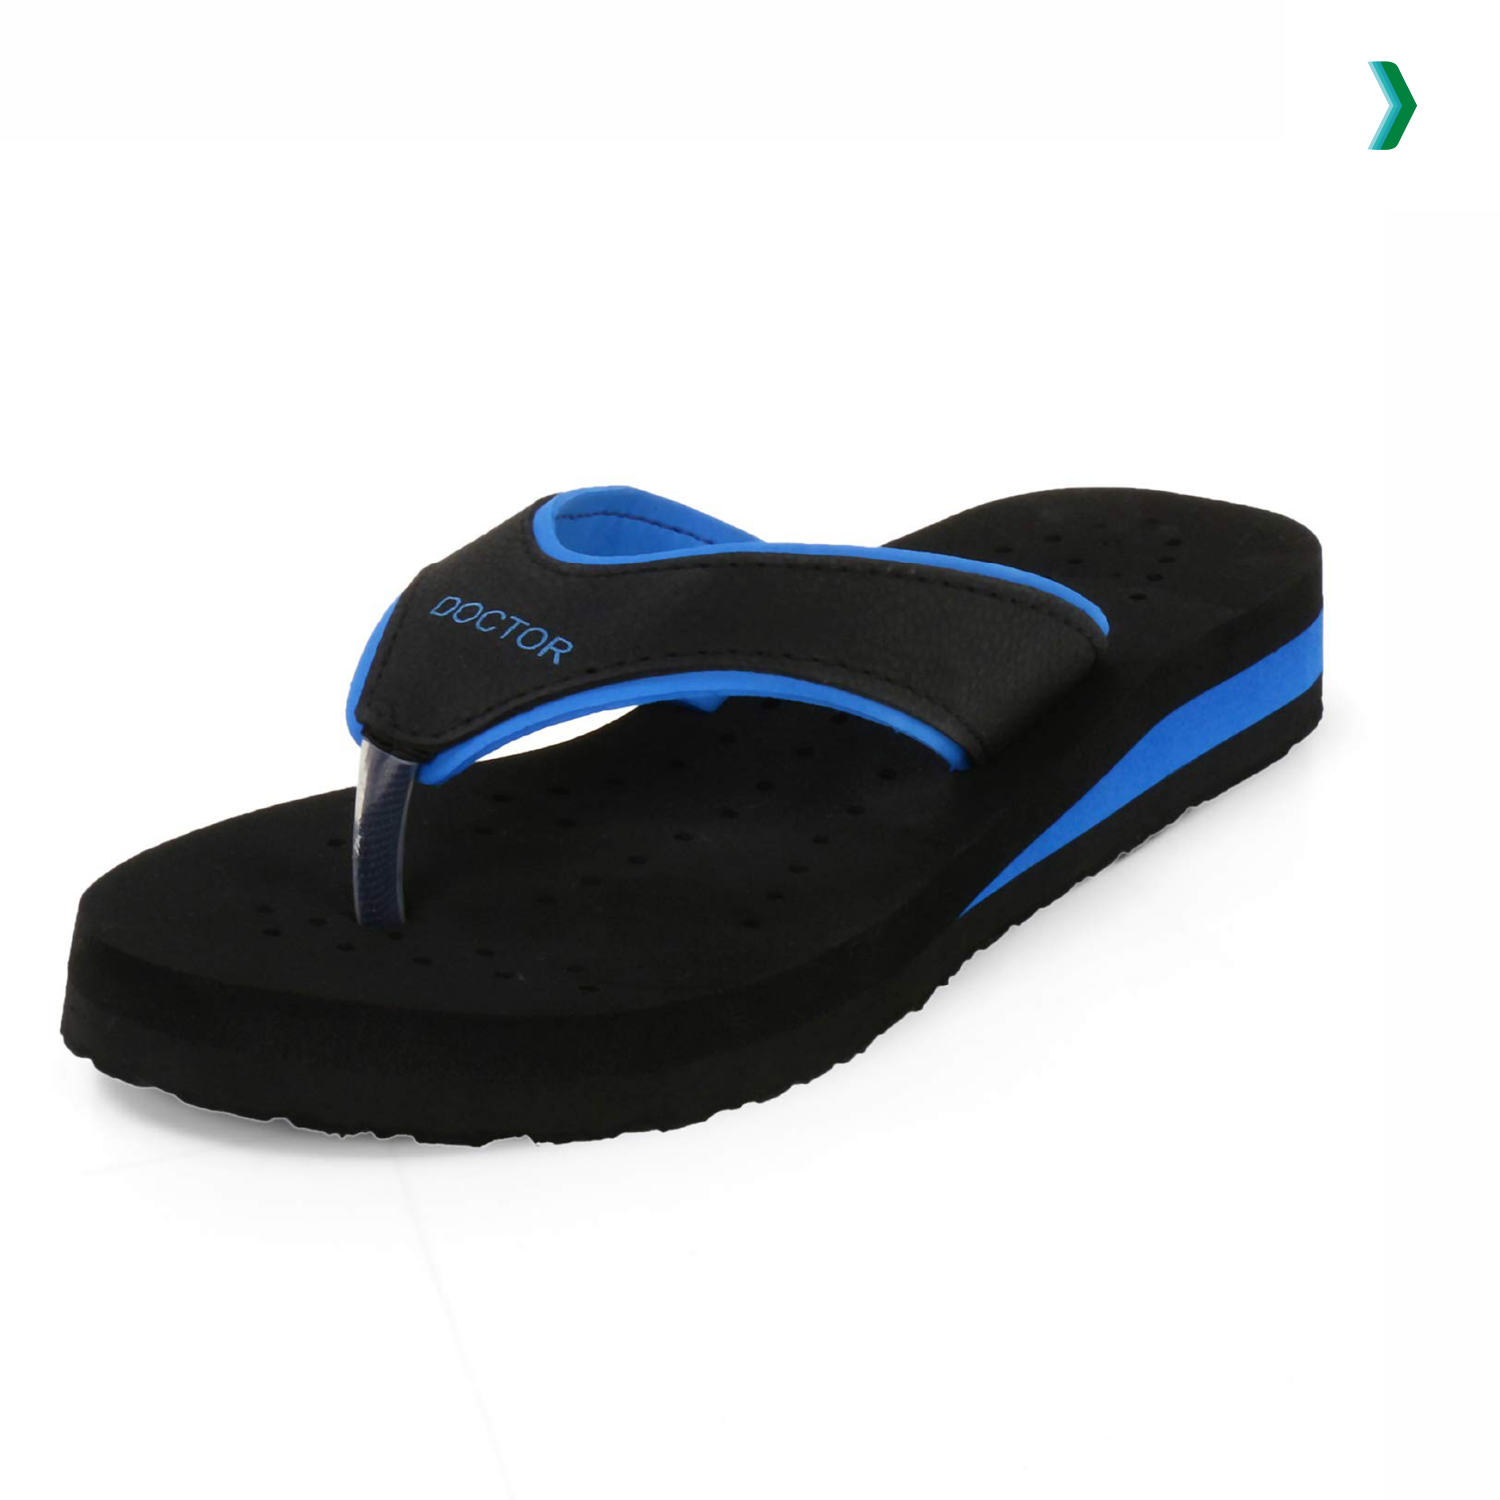 Buy orthopedic ladies slippers | Daily use slippers – OrthoJoy